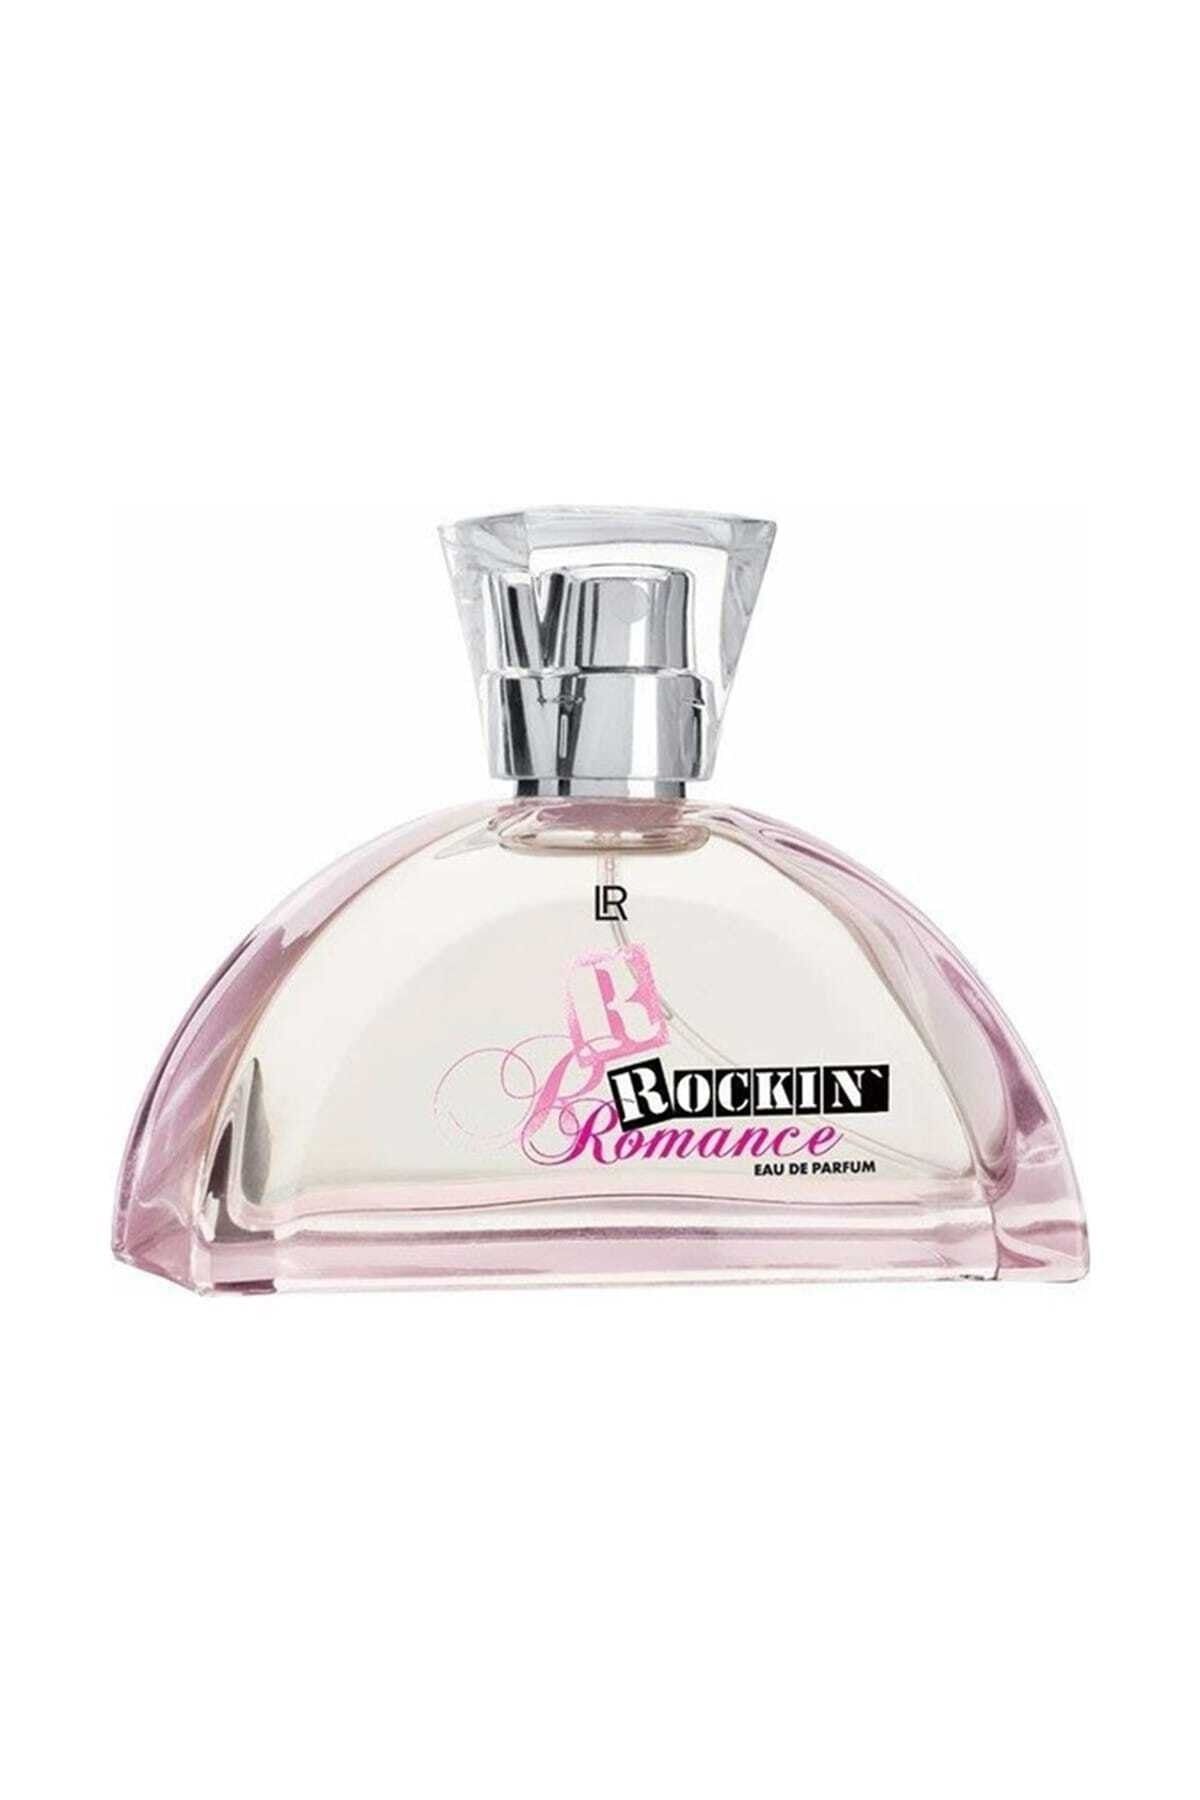 LR Rockin' Romance Eau De Parfum - Kadın Parfümü 50 ml